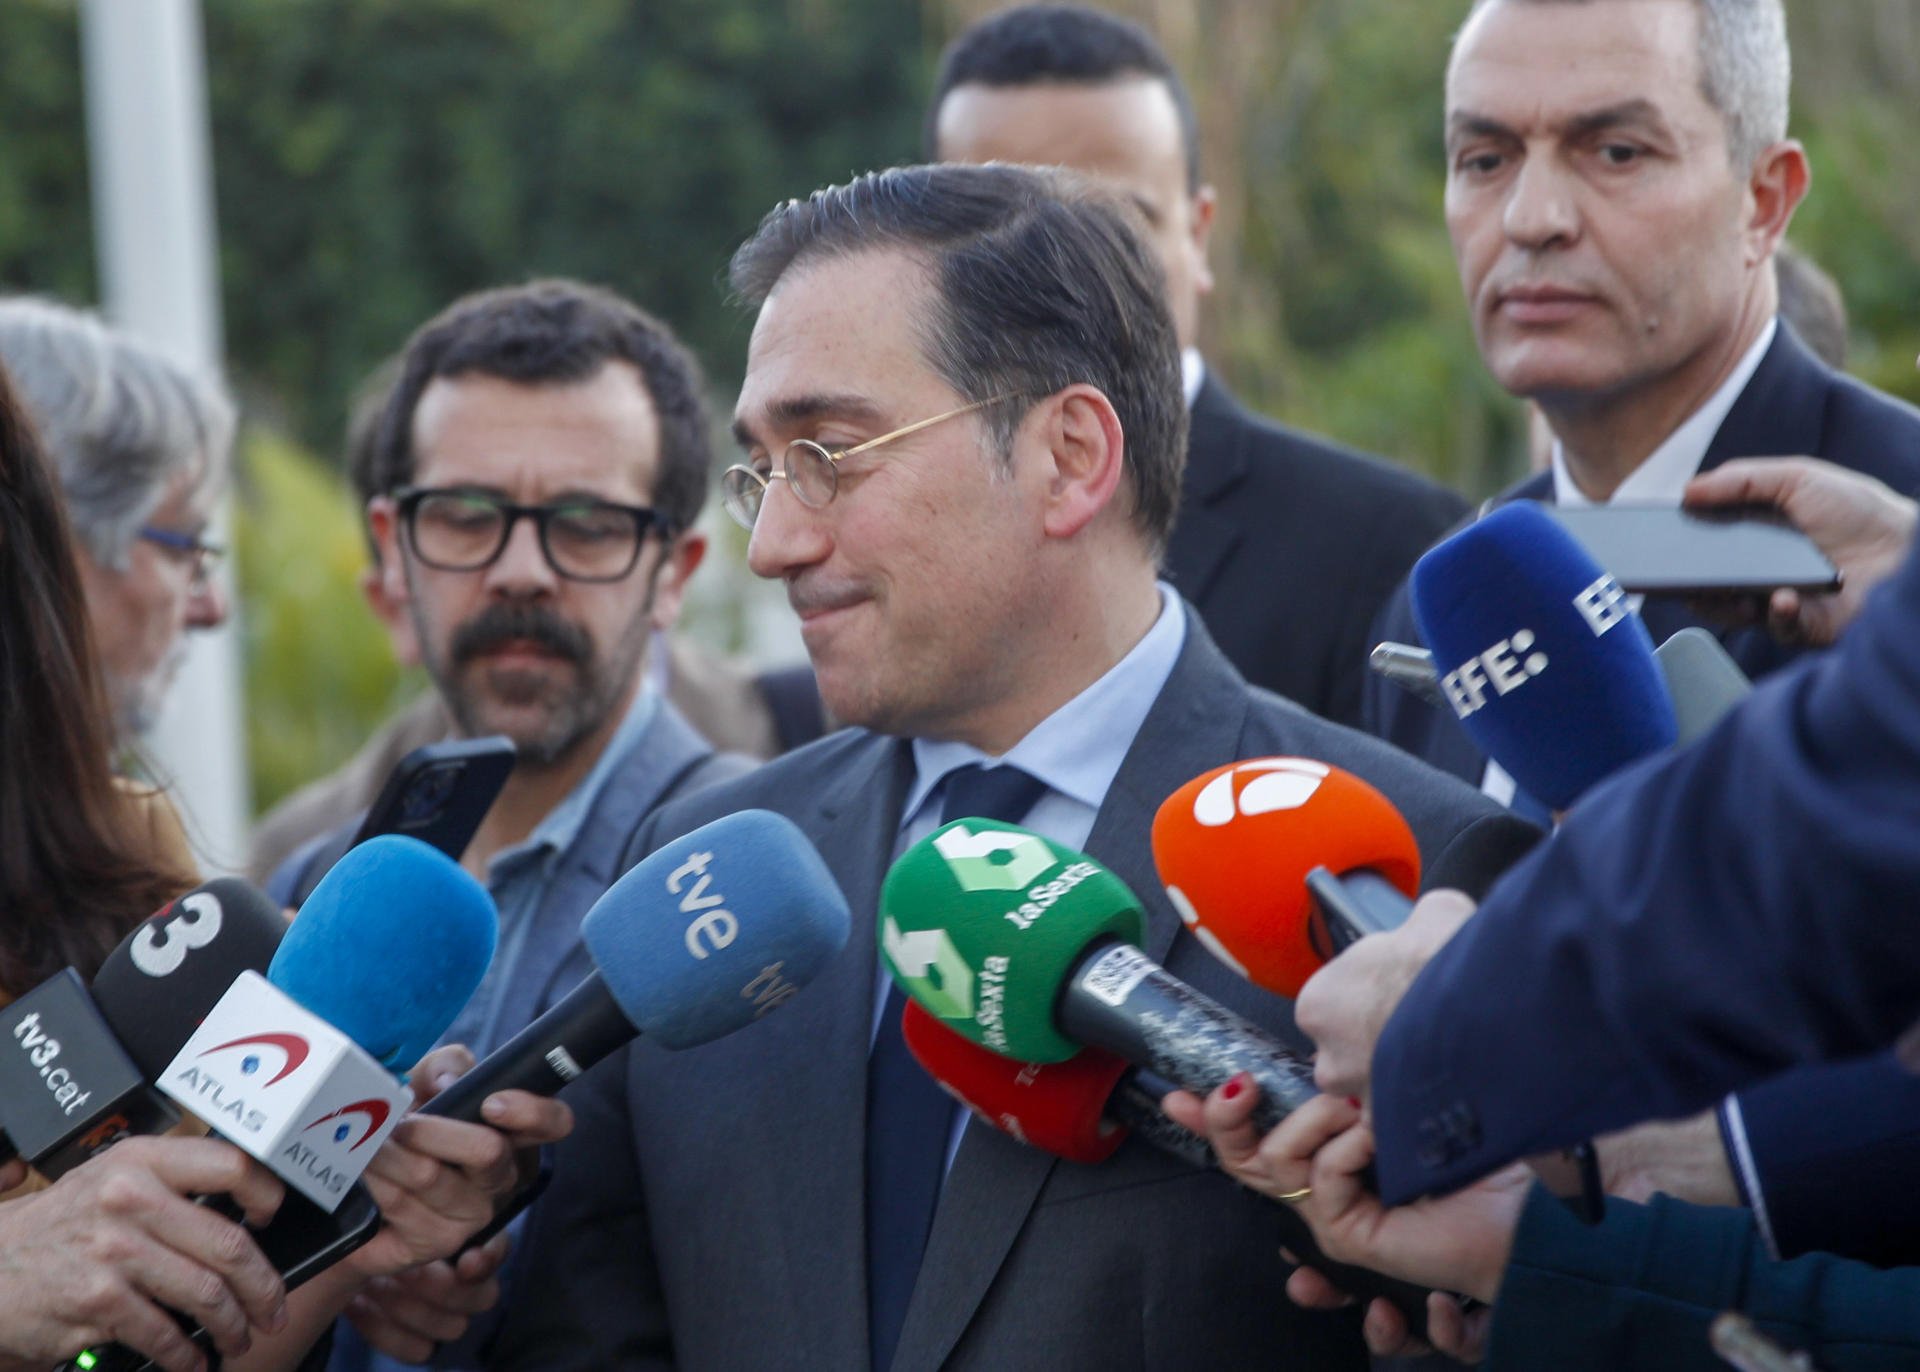 El ridícul del ministre d'Exteriors espanyol al Marroc | VÍDEO